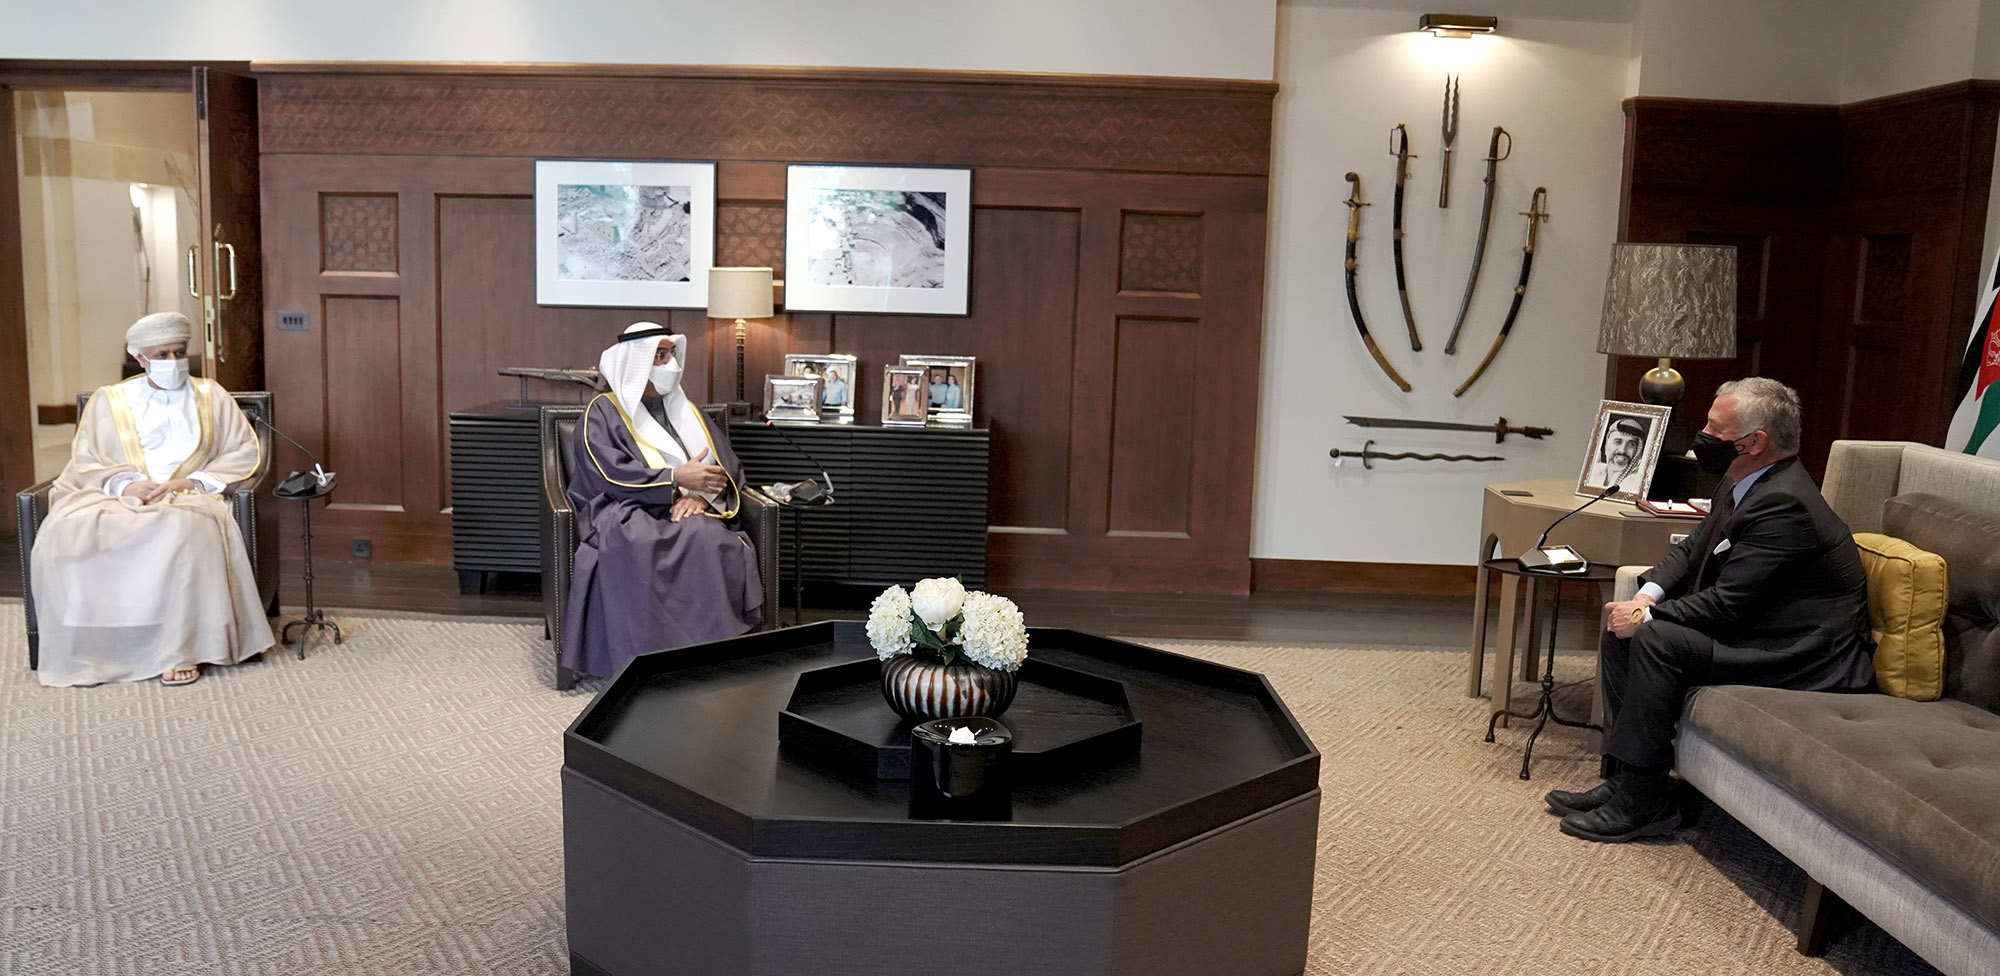 جلالة الملك يستقبل الأمين العام لمجلس التعاون لدول الخليج العربية